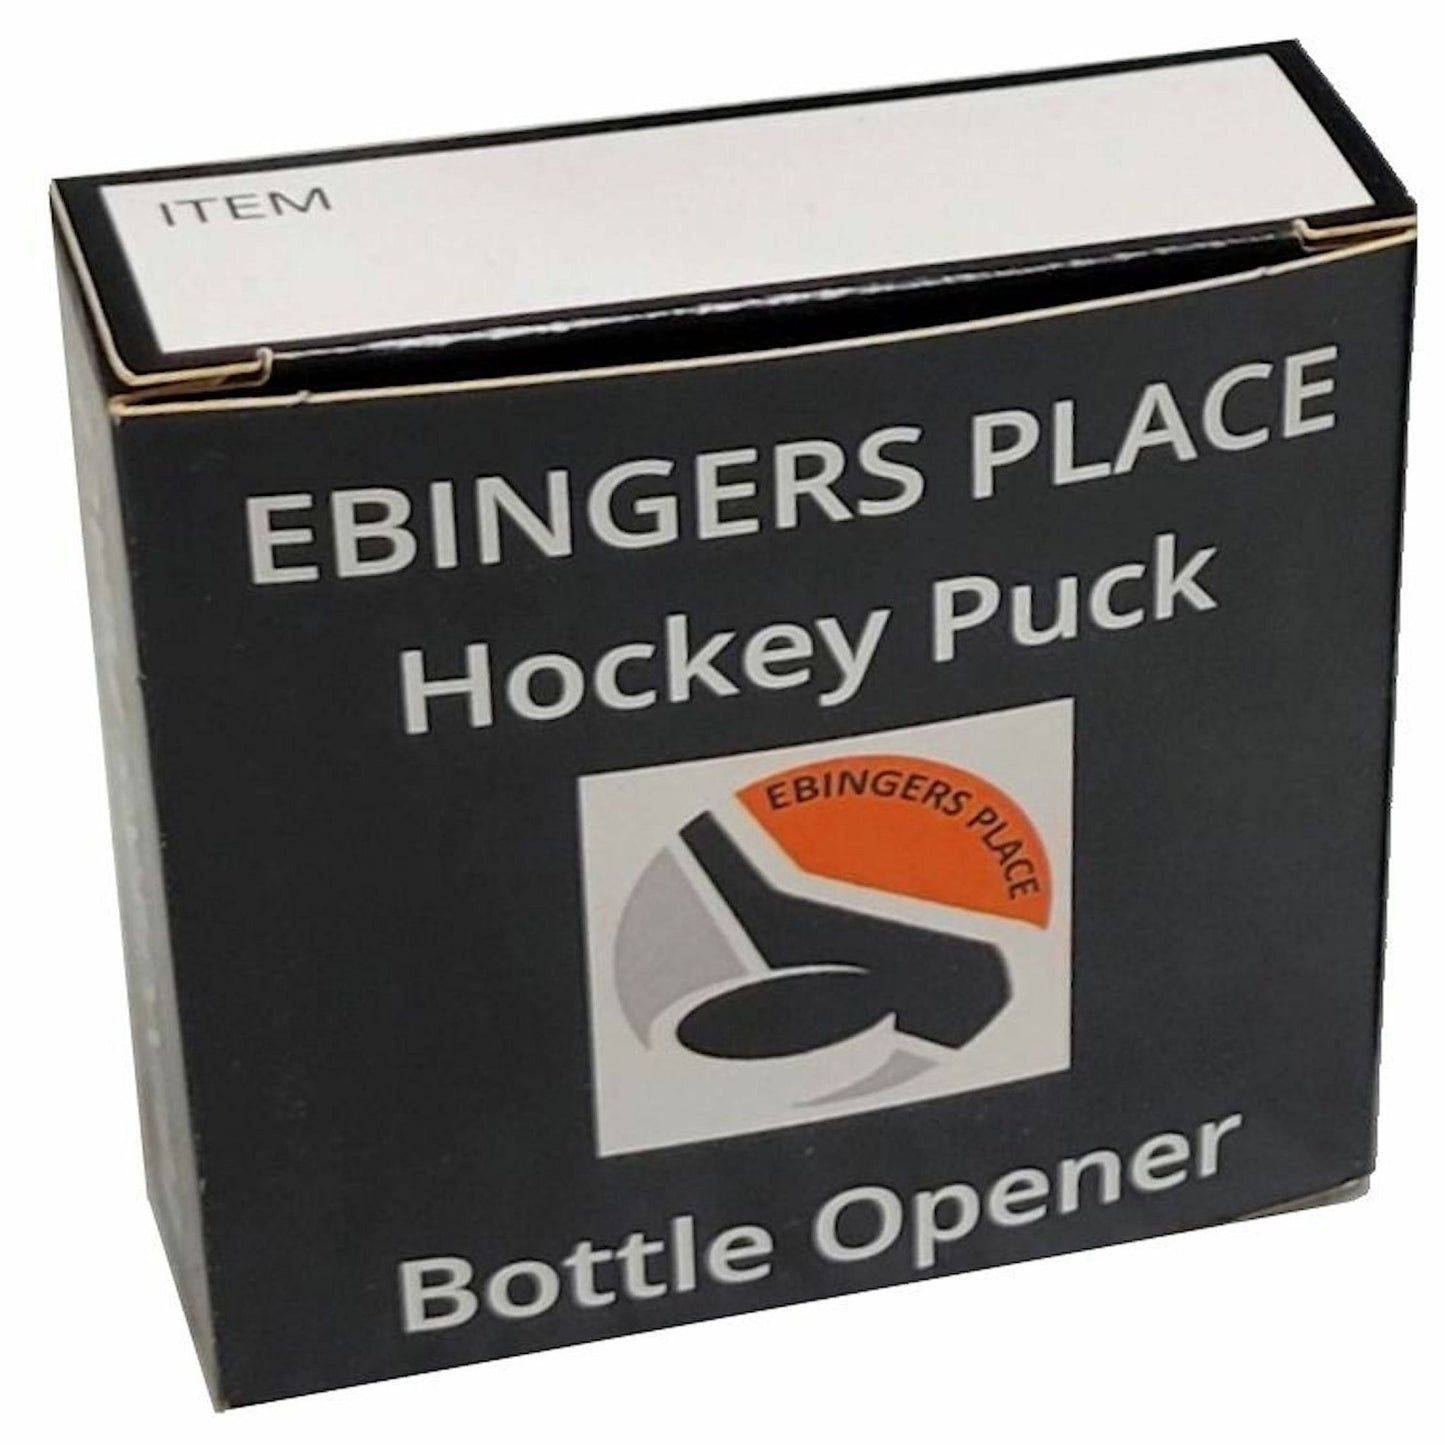 Detroit Red Wings Retro Series Hockey Puck Bottle Opener